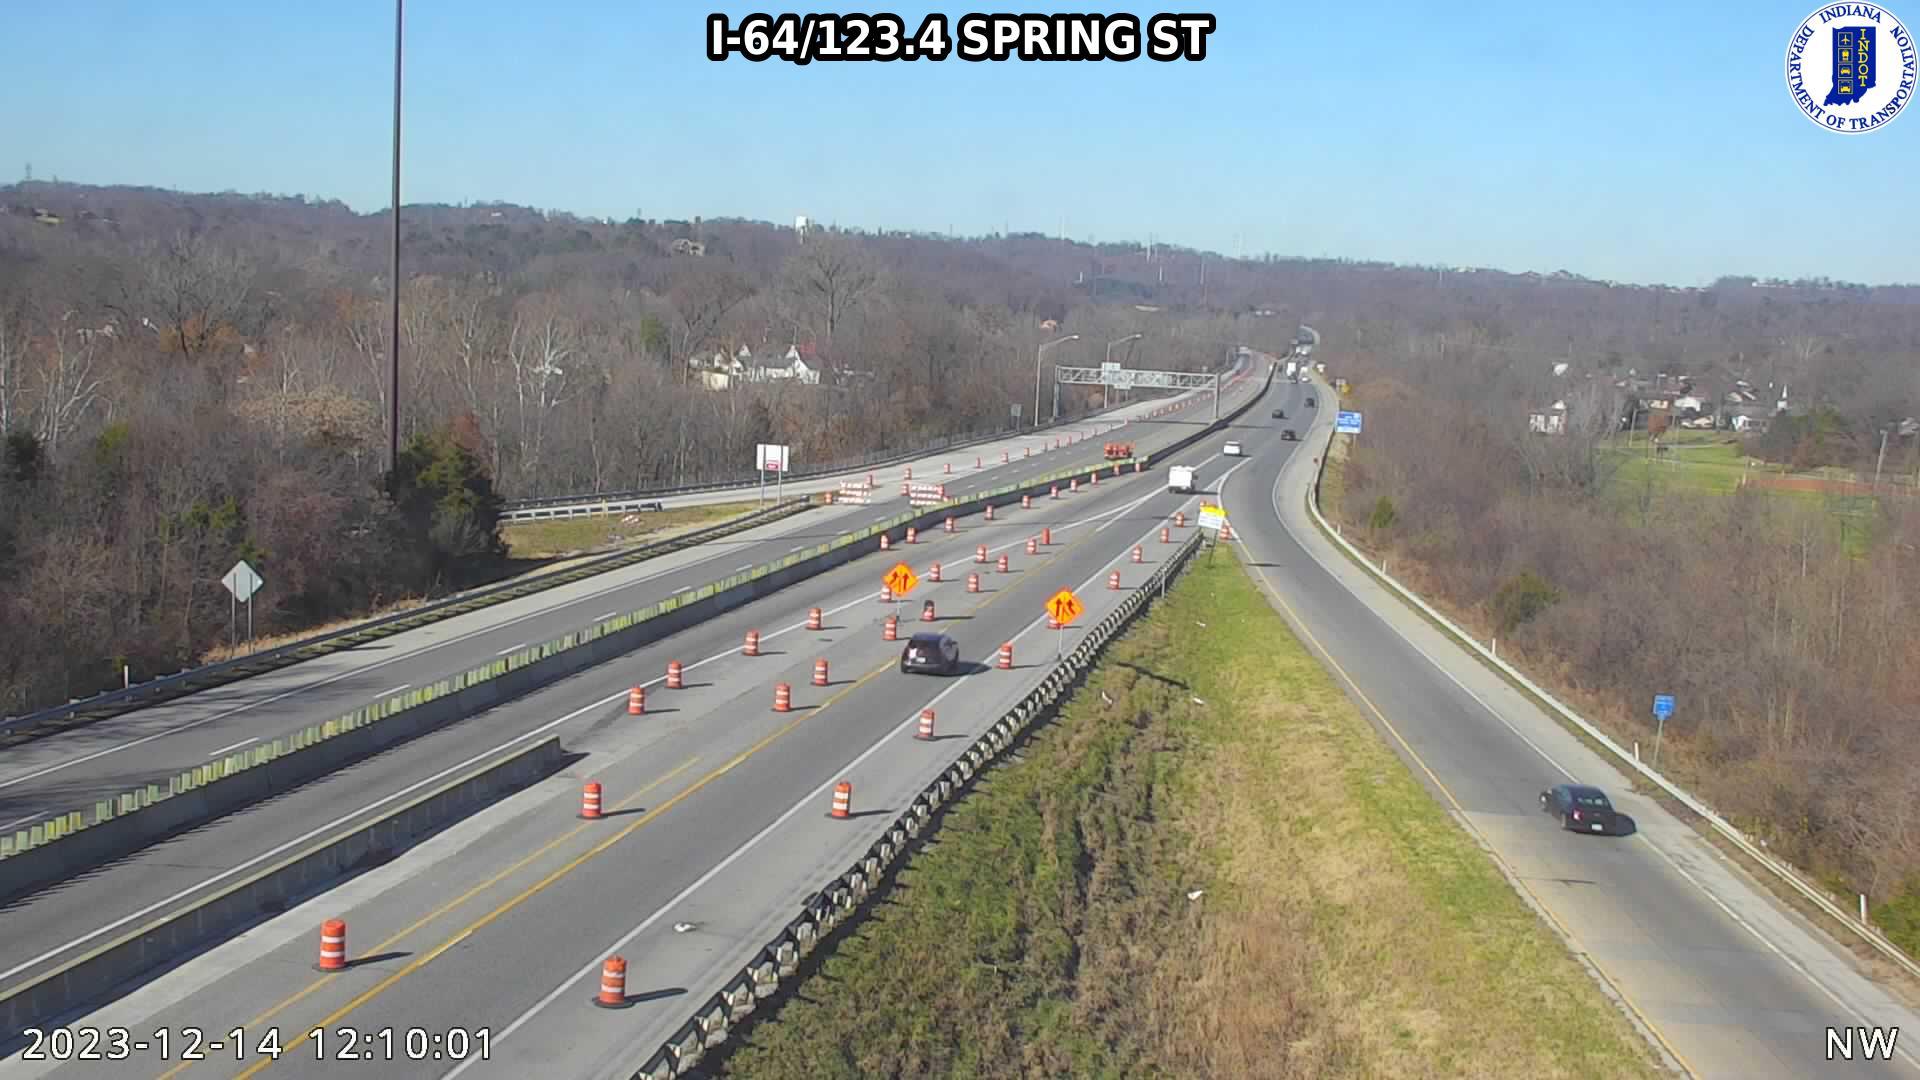 New Albany: I-64: I-64/123.4 SPRING ST Traffic Camera